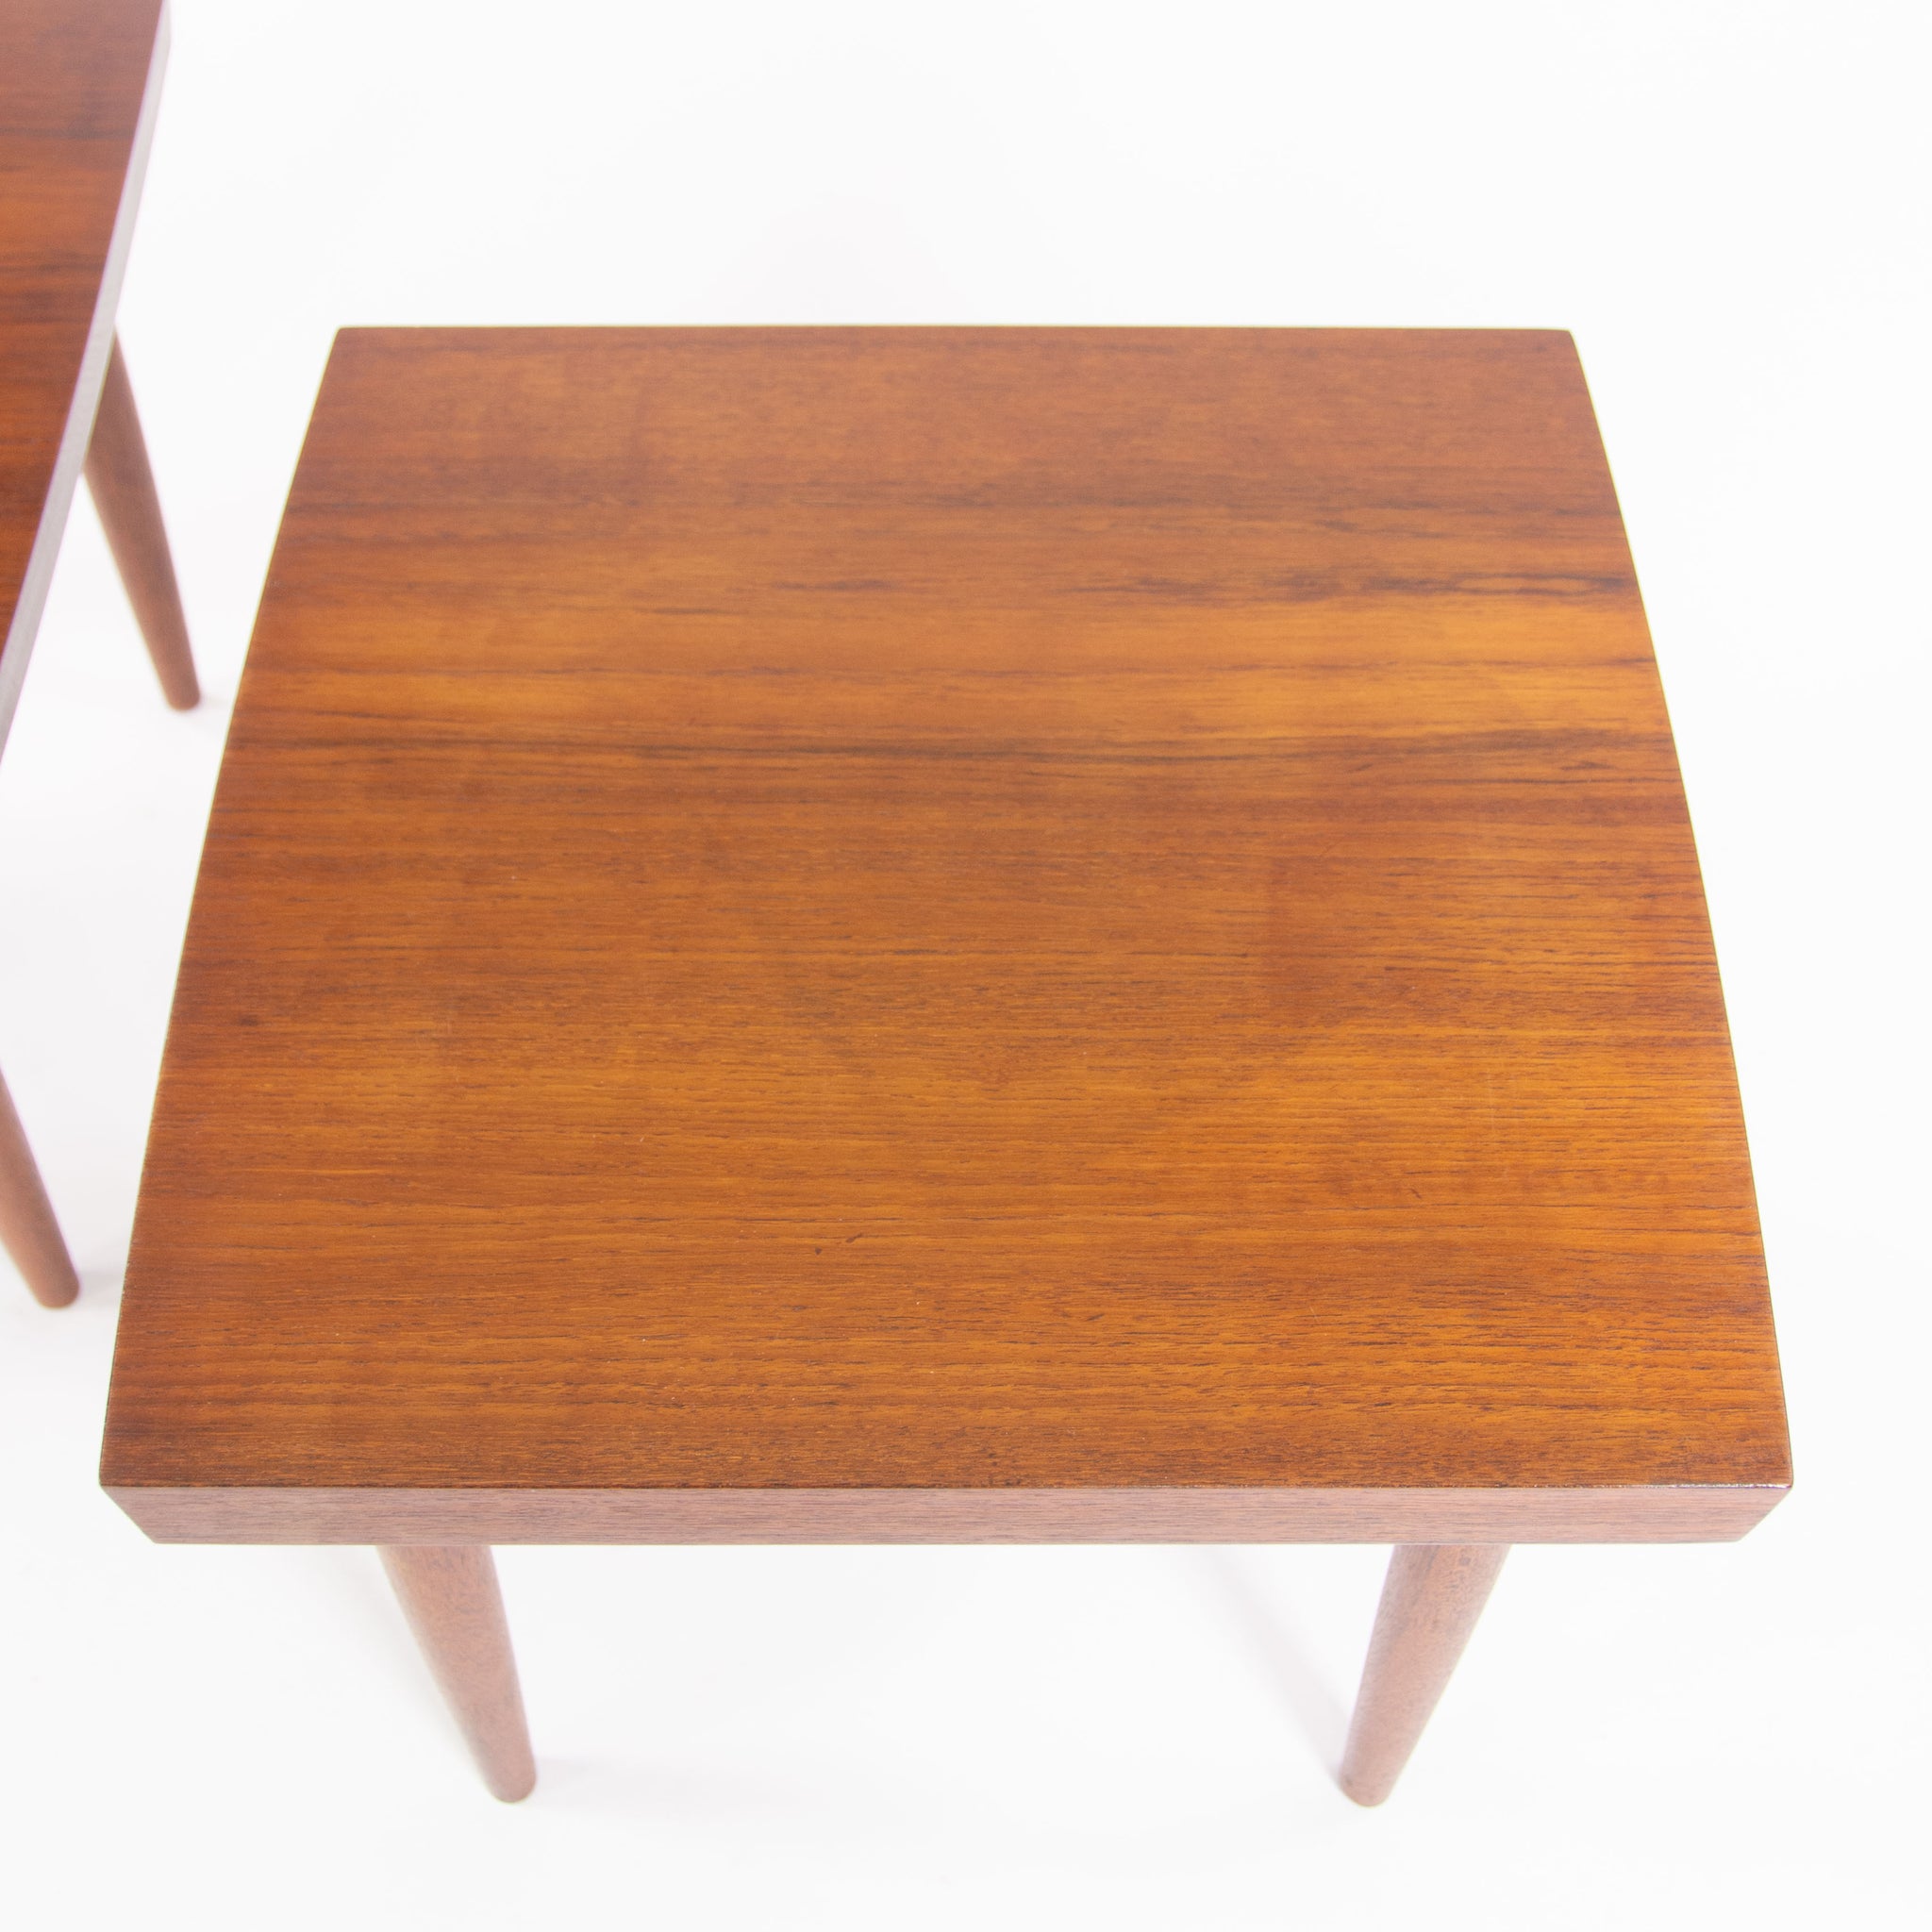 SOLD 1959 Vintage George Nakashima Studio Teak End Side Tables Stools with Provenance